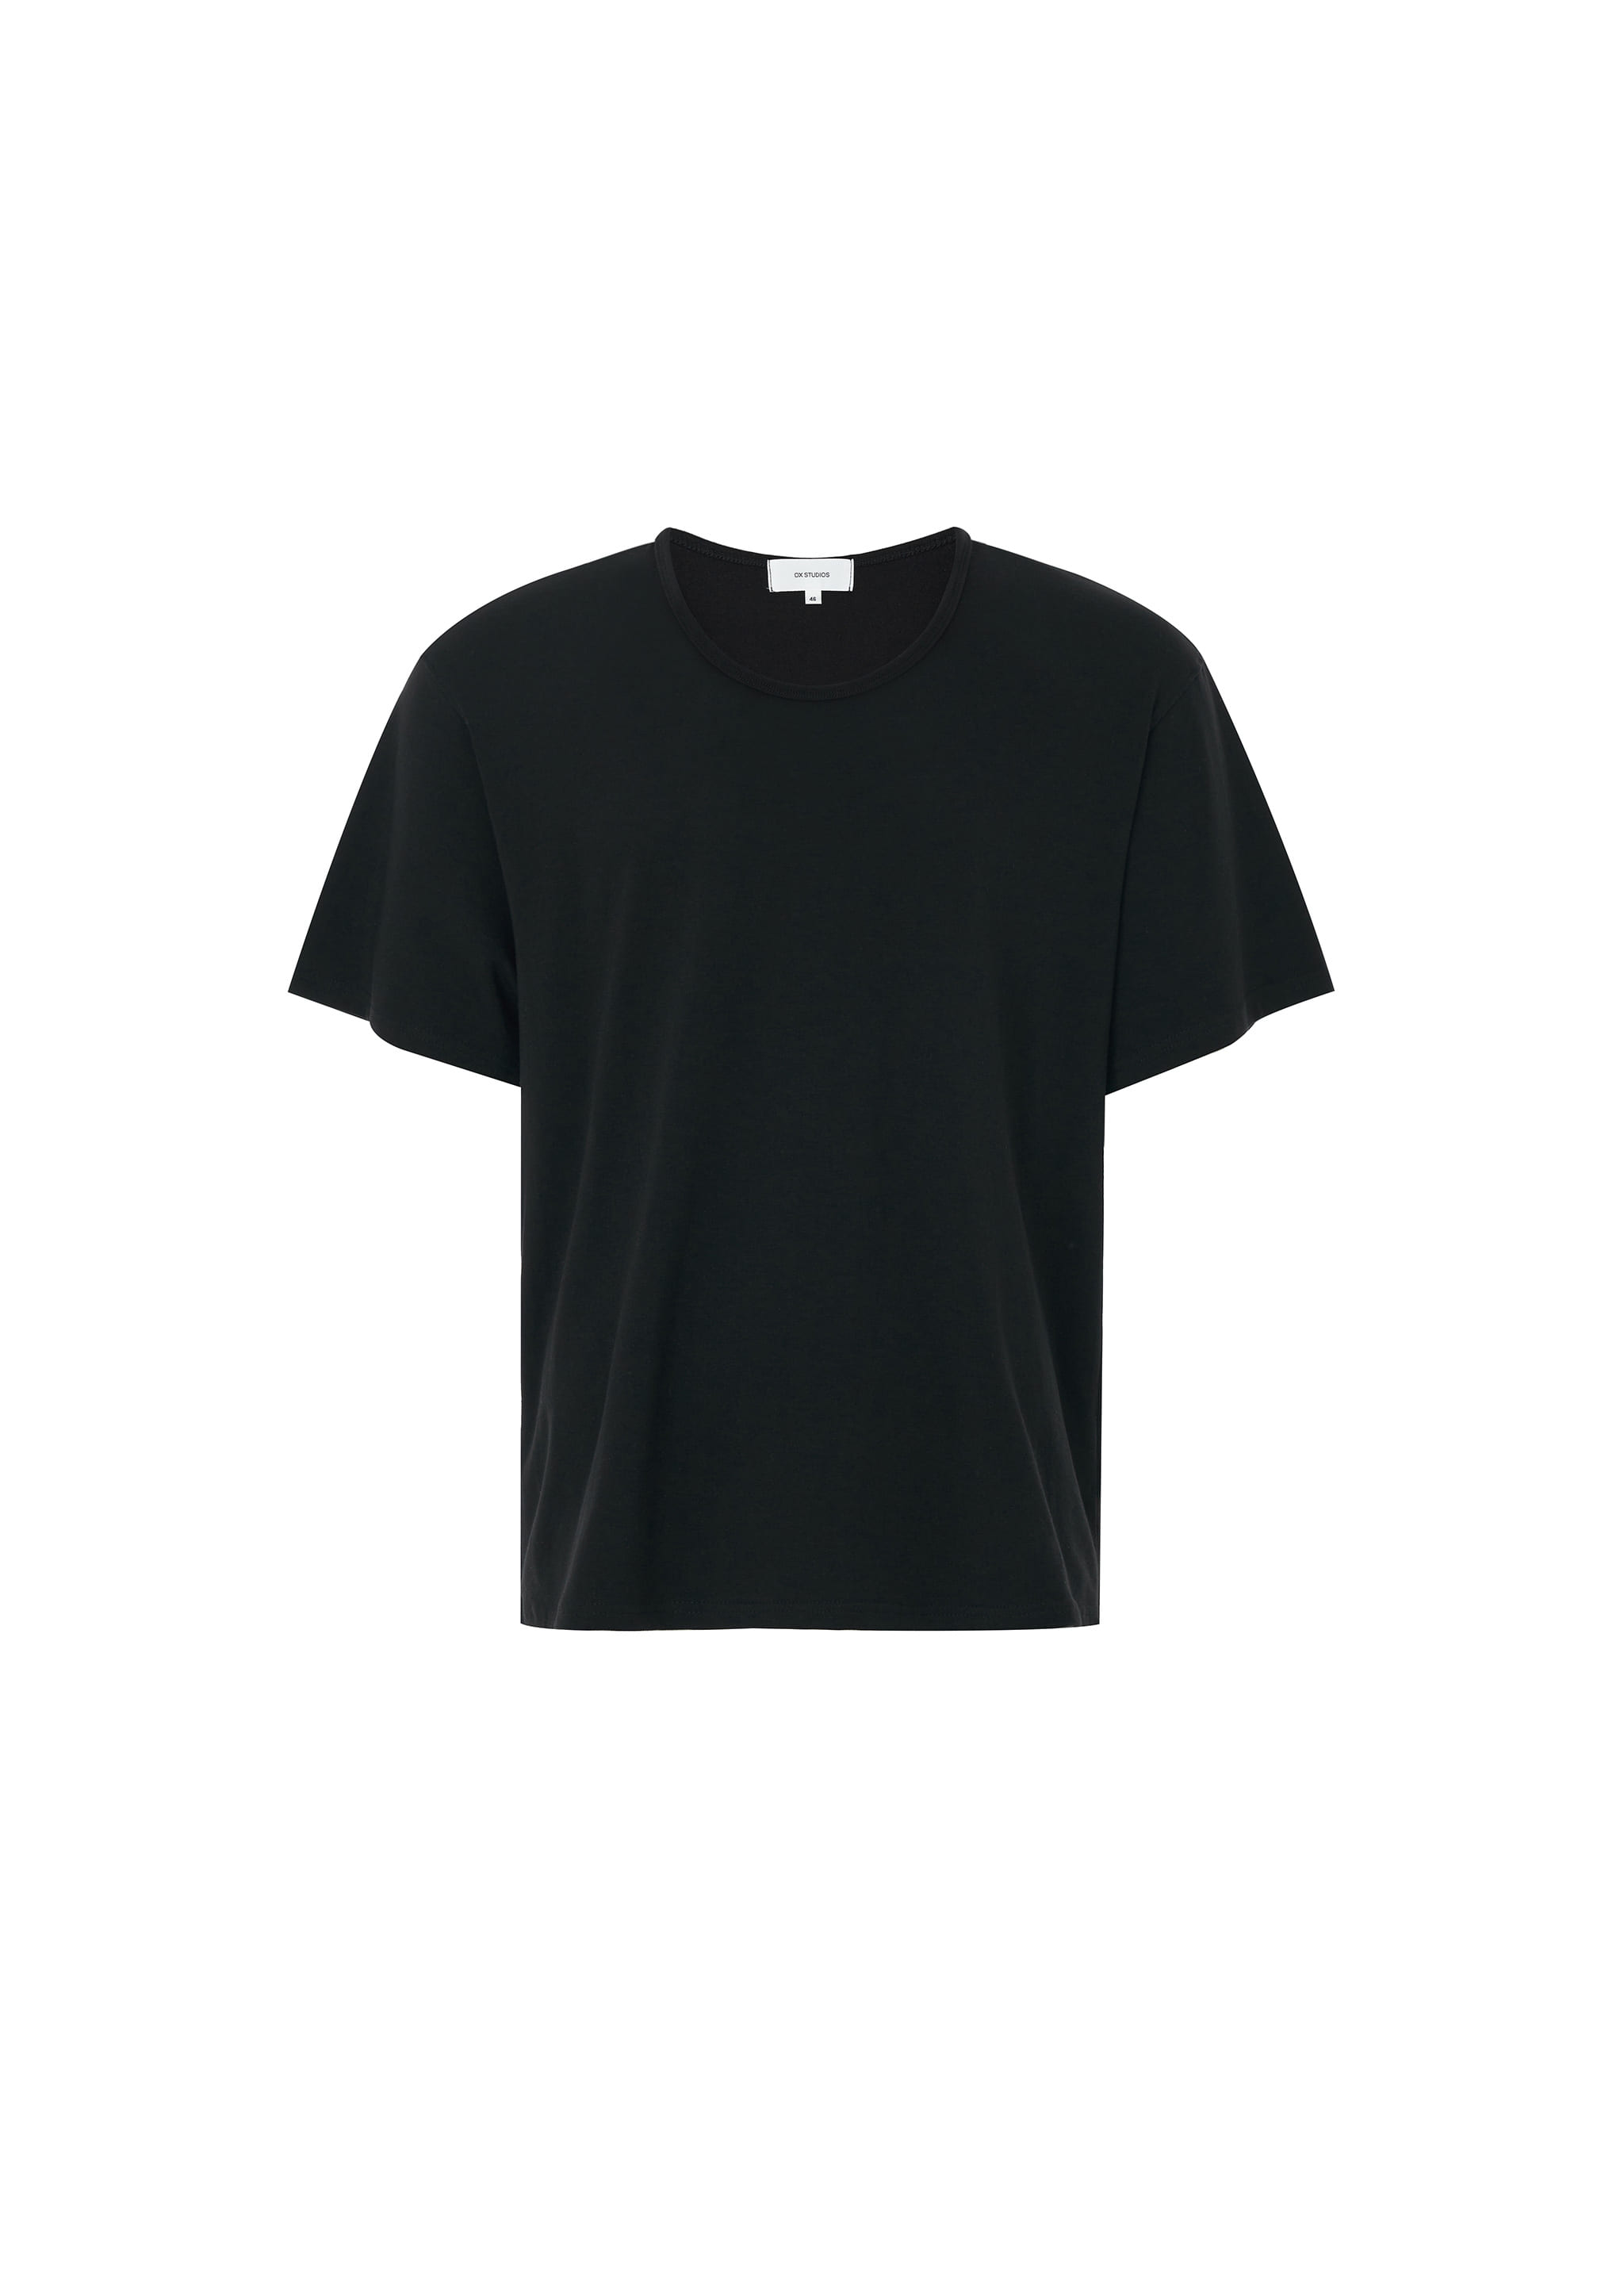 세미 유넥 티셔츠 (블랙) 2차 리오더